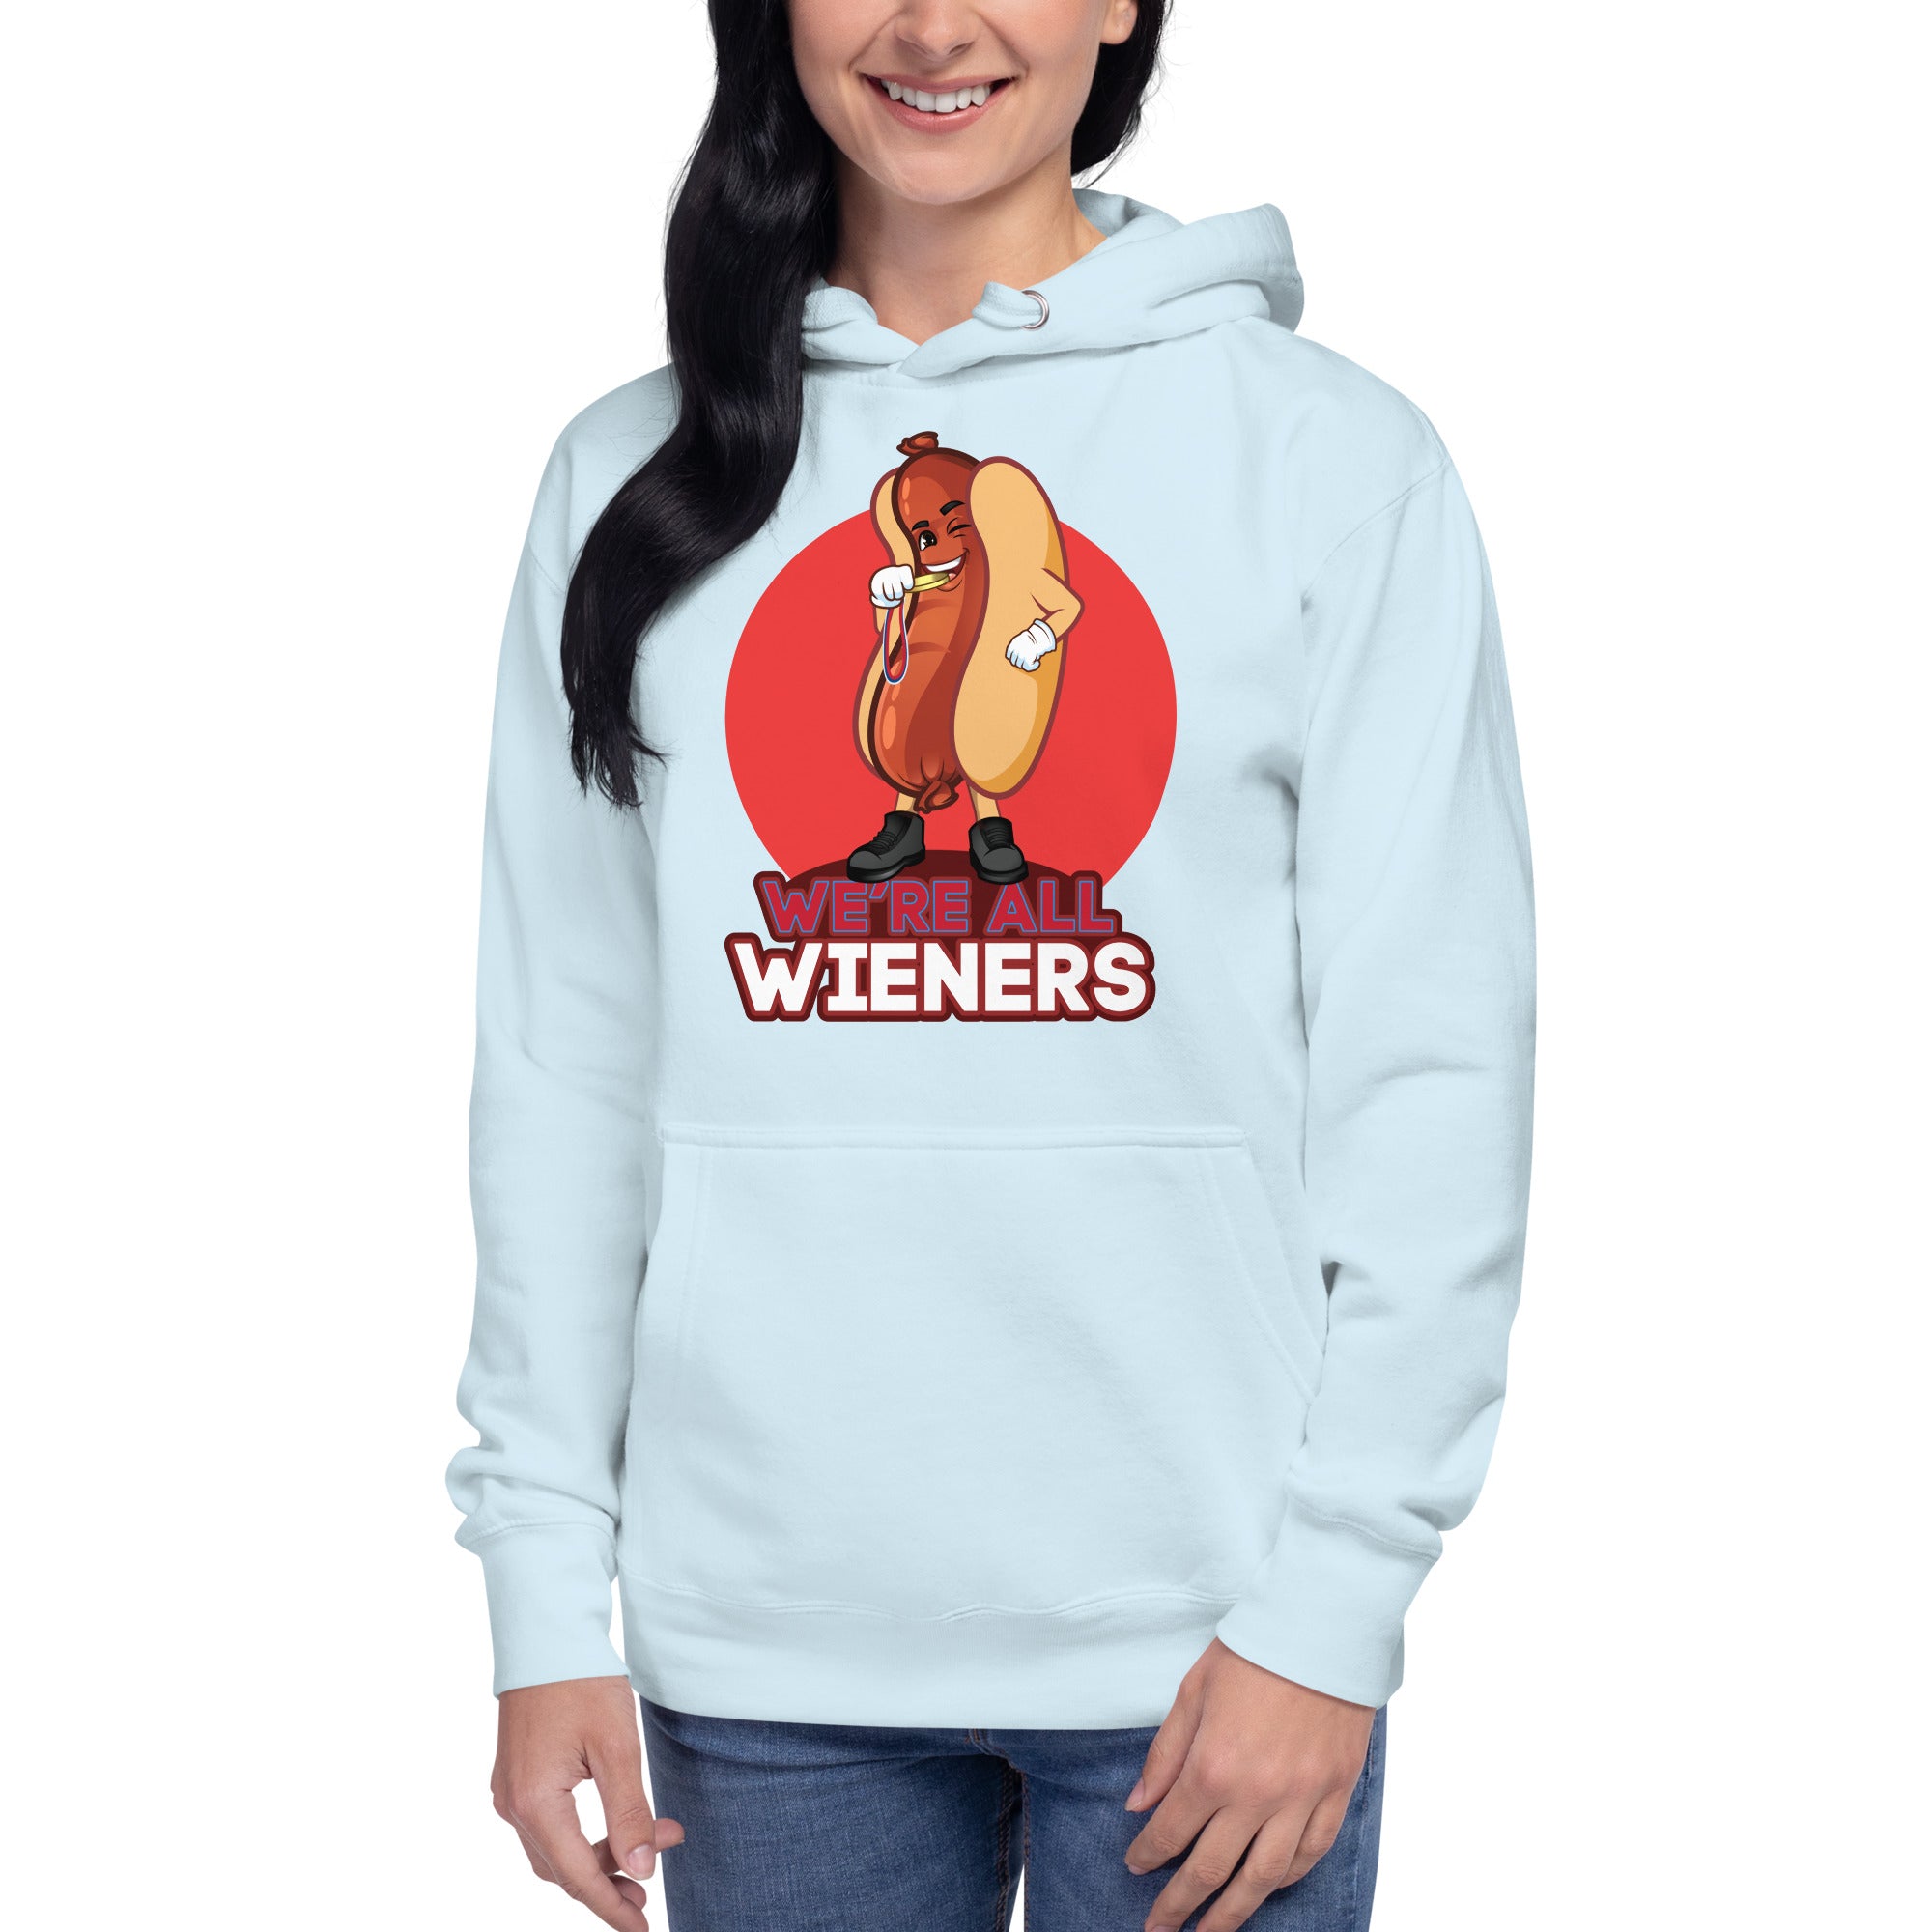 We're All Wieners Women's Heavy Hoodie - Red